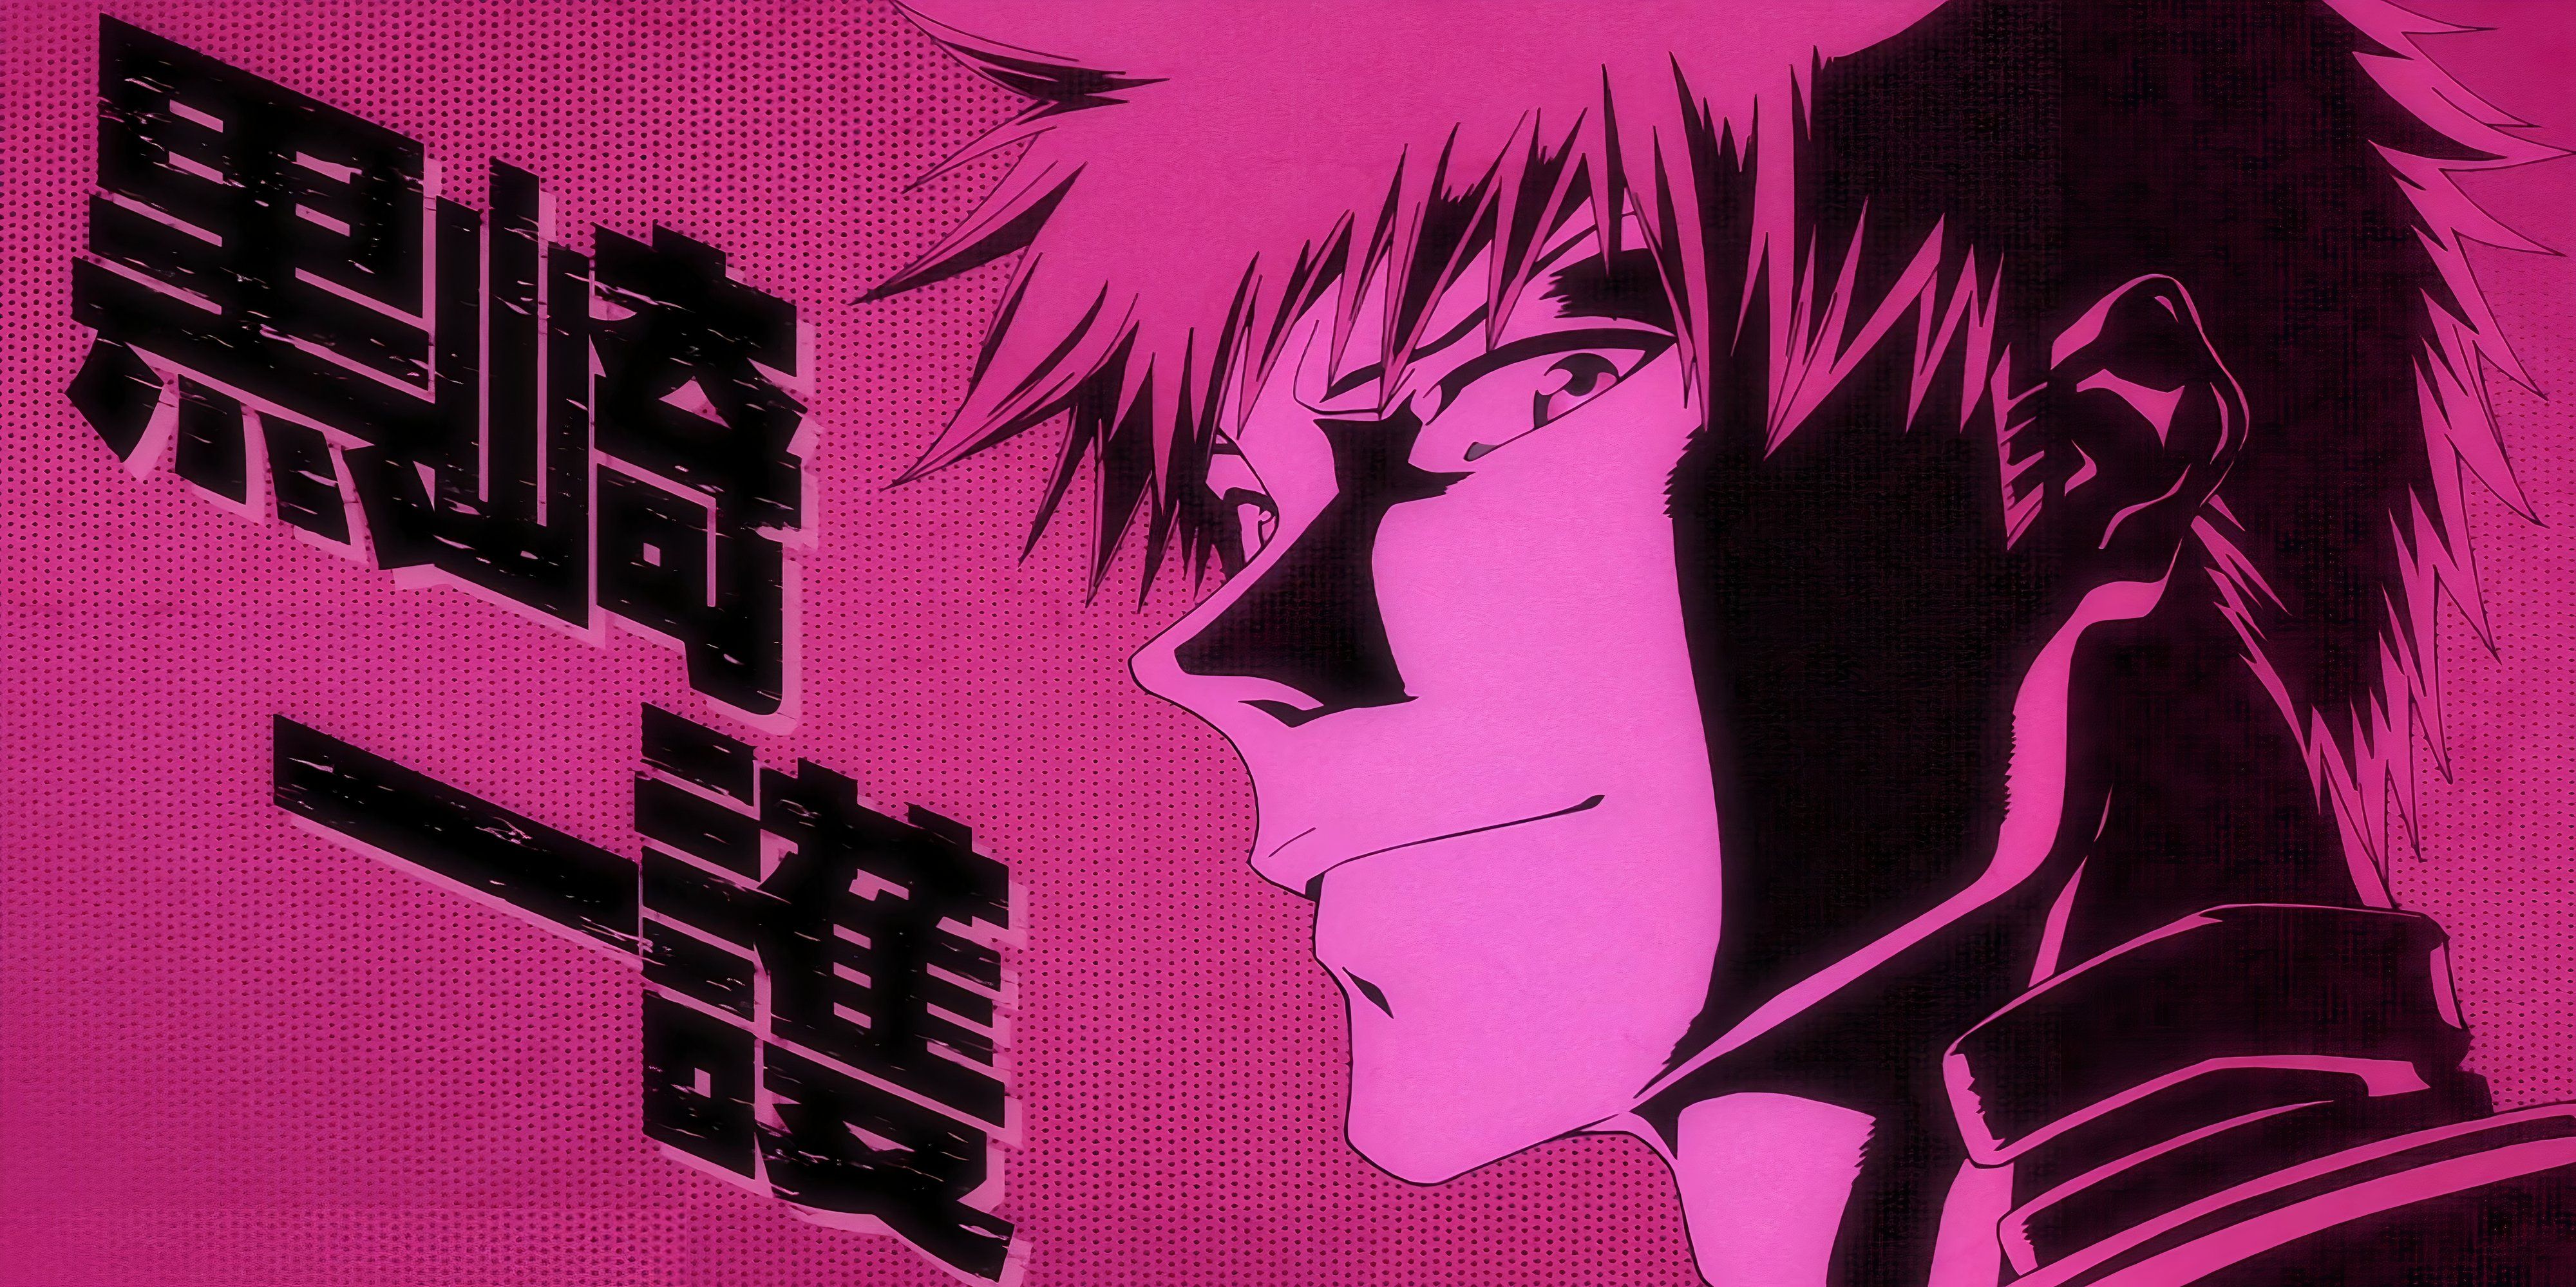 Ichigo no primeiro episódio